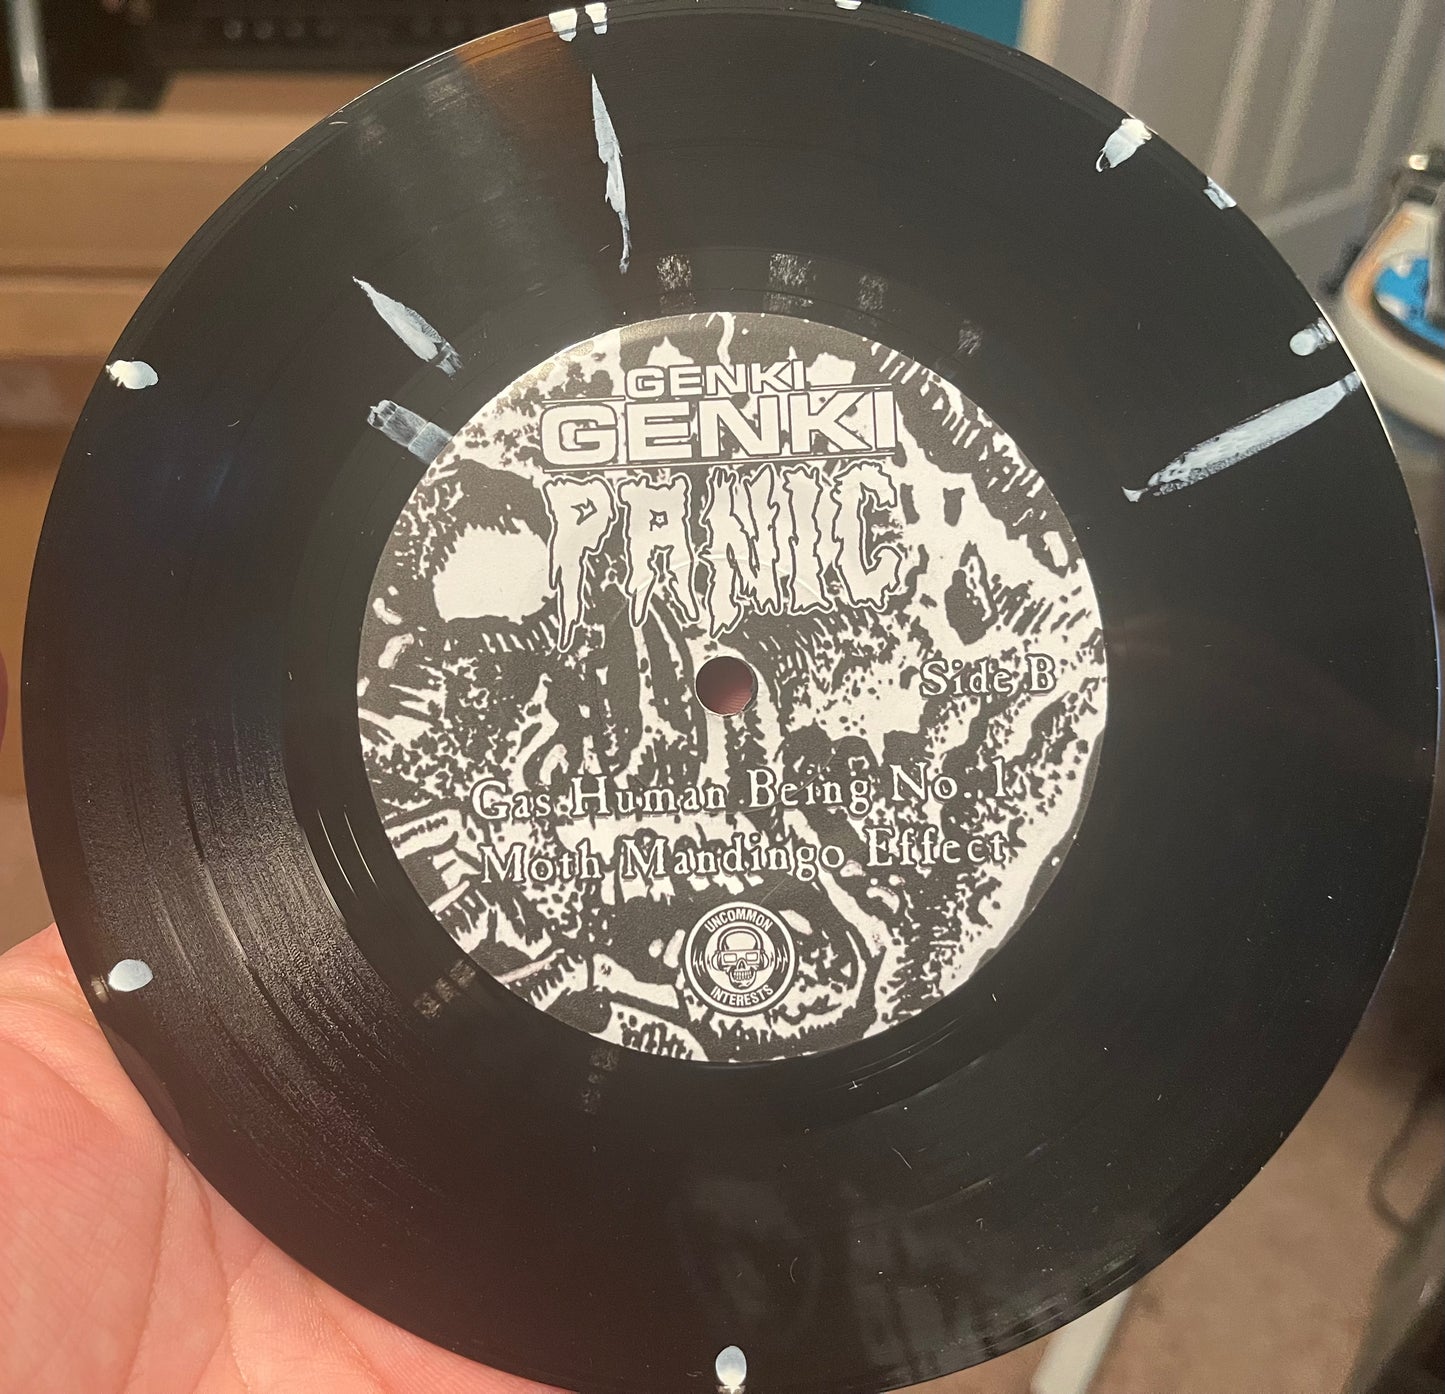 OMRDST-006 Genki Genki Panic “The Munge” 7 inch Vinyl